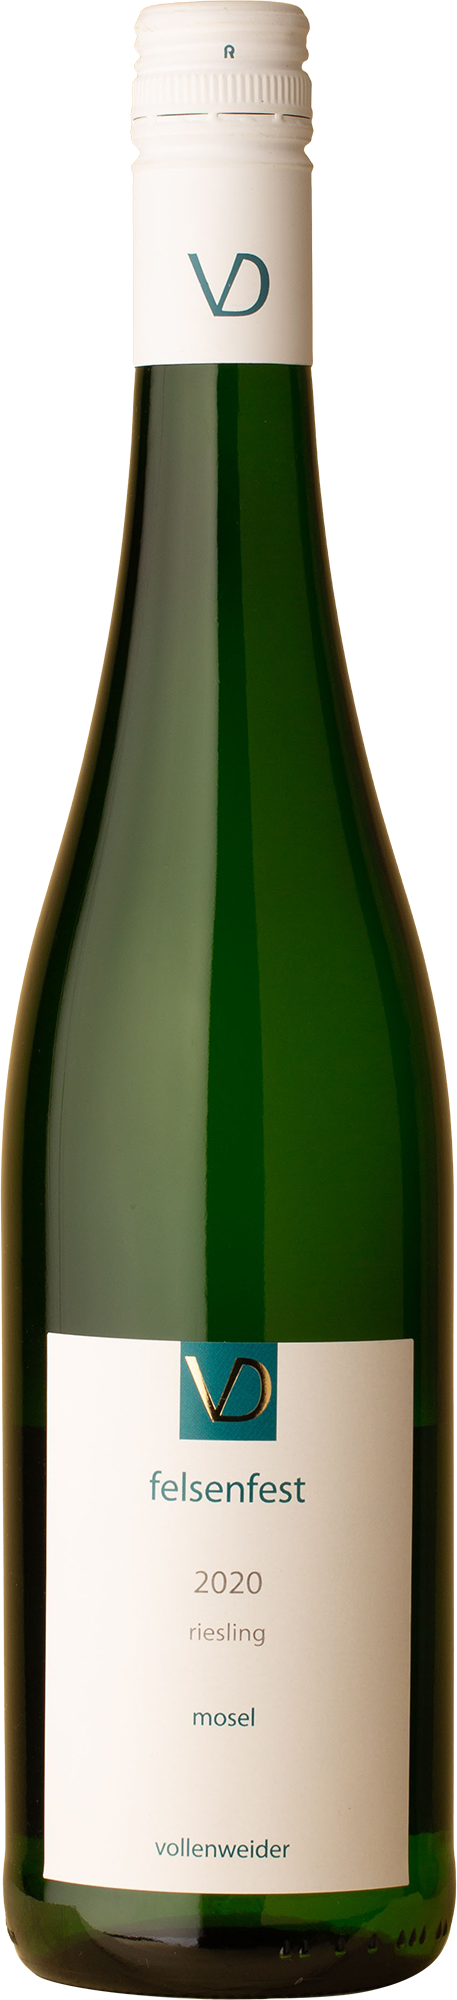 Vollenweider - Felsenfest Riesling 2020 White Wine